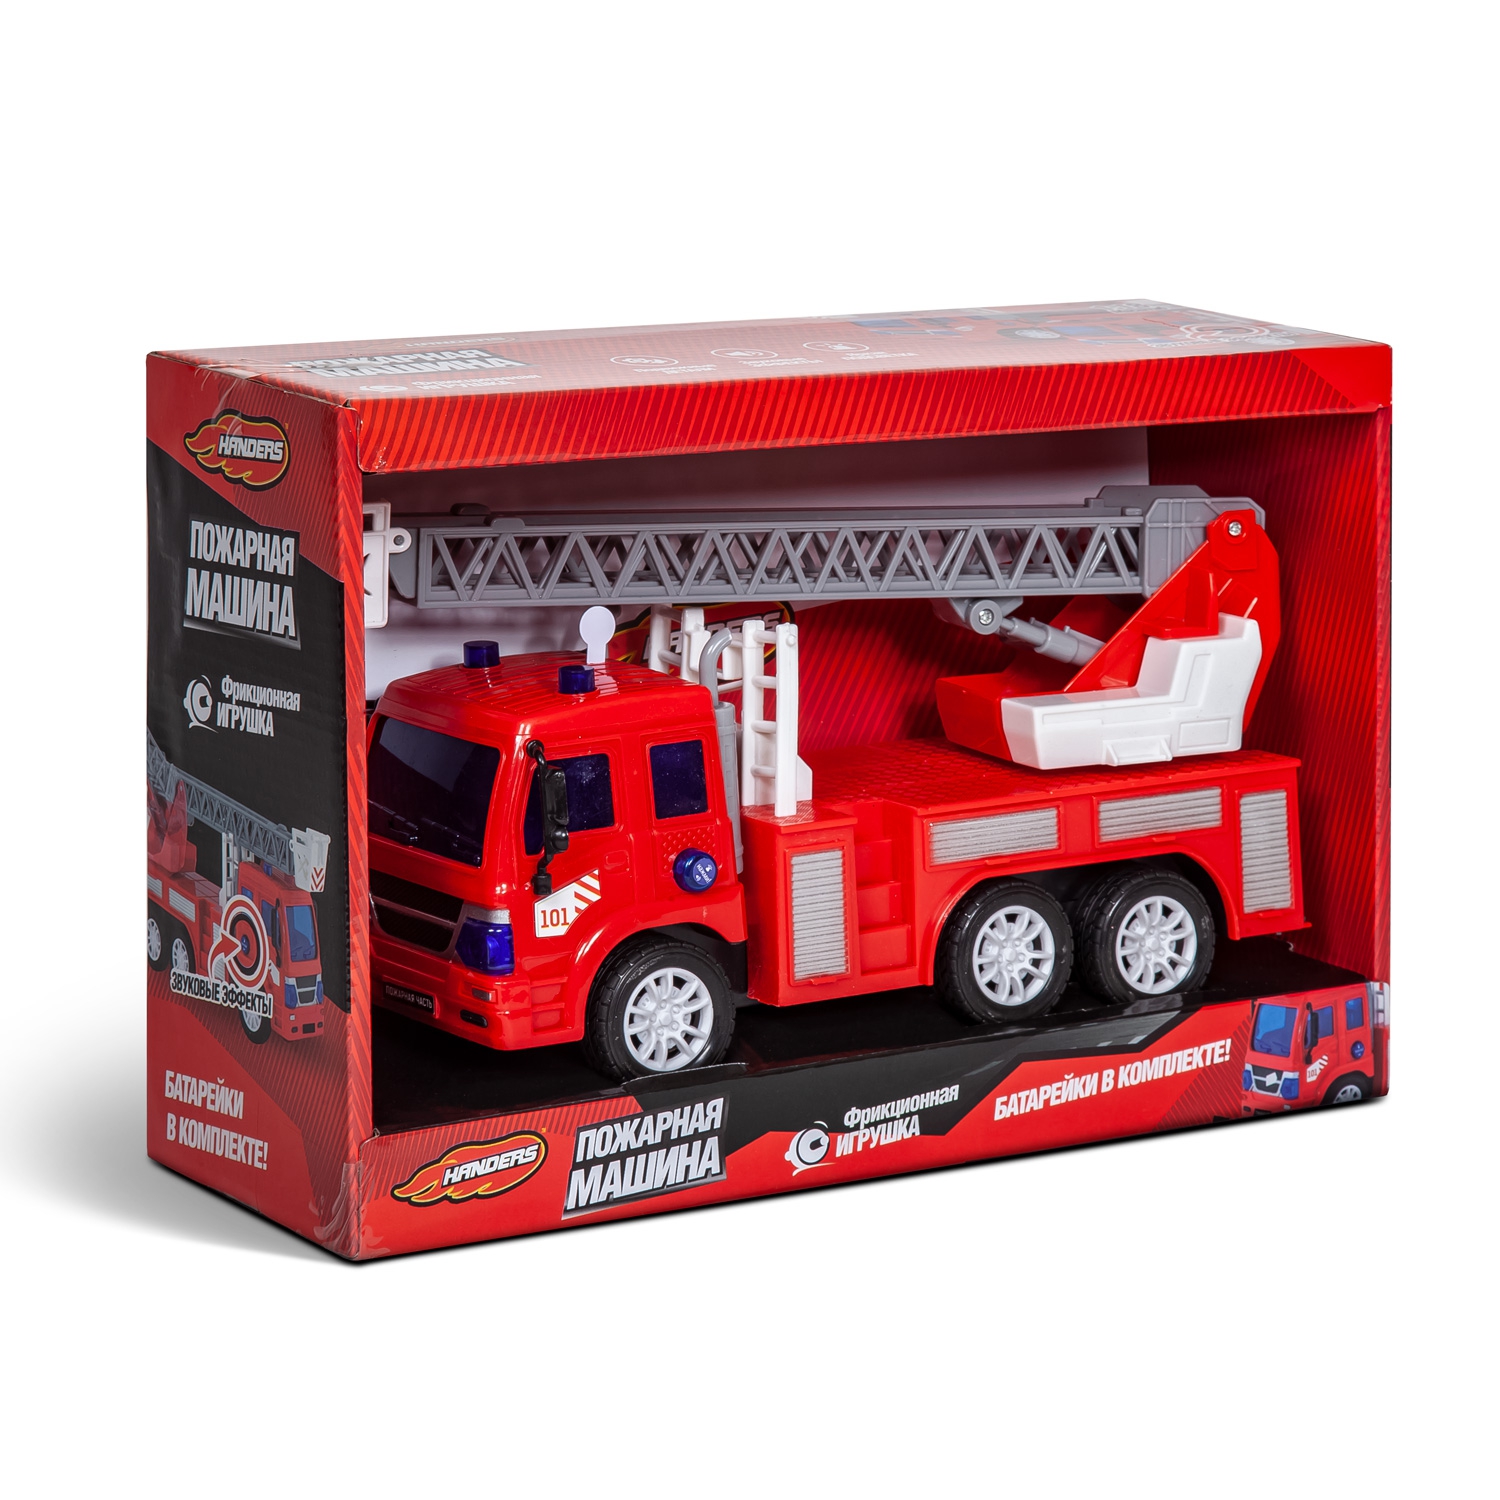 Фрикционная игрушка Handers Пожарная машина: Автолестница (27 см, свет, звук, подвиж. детали)